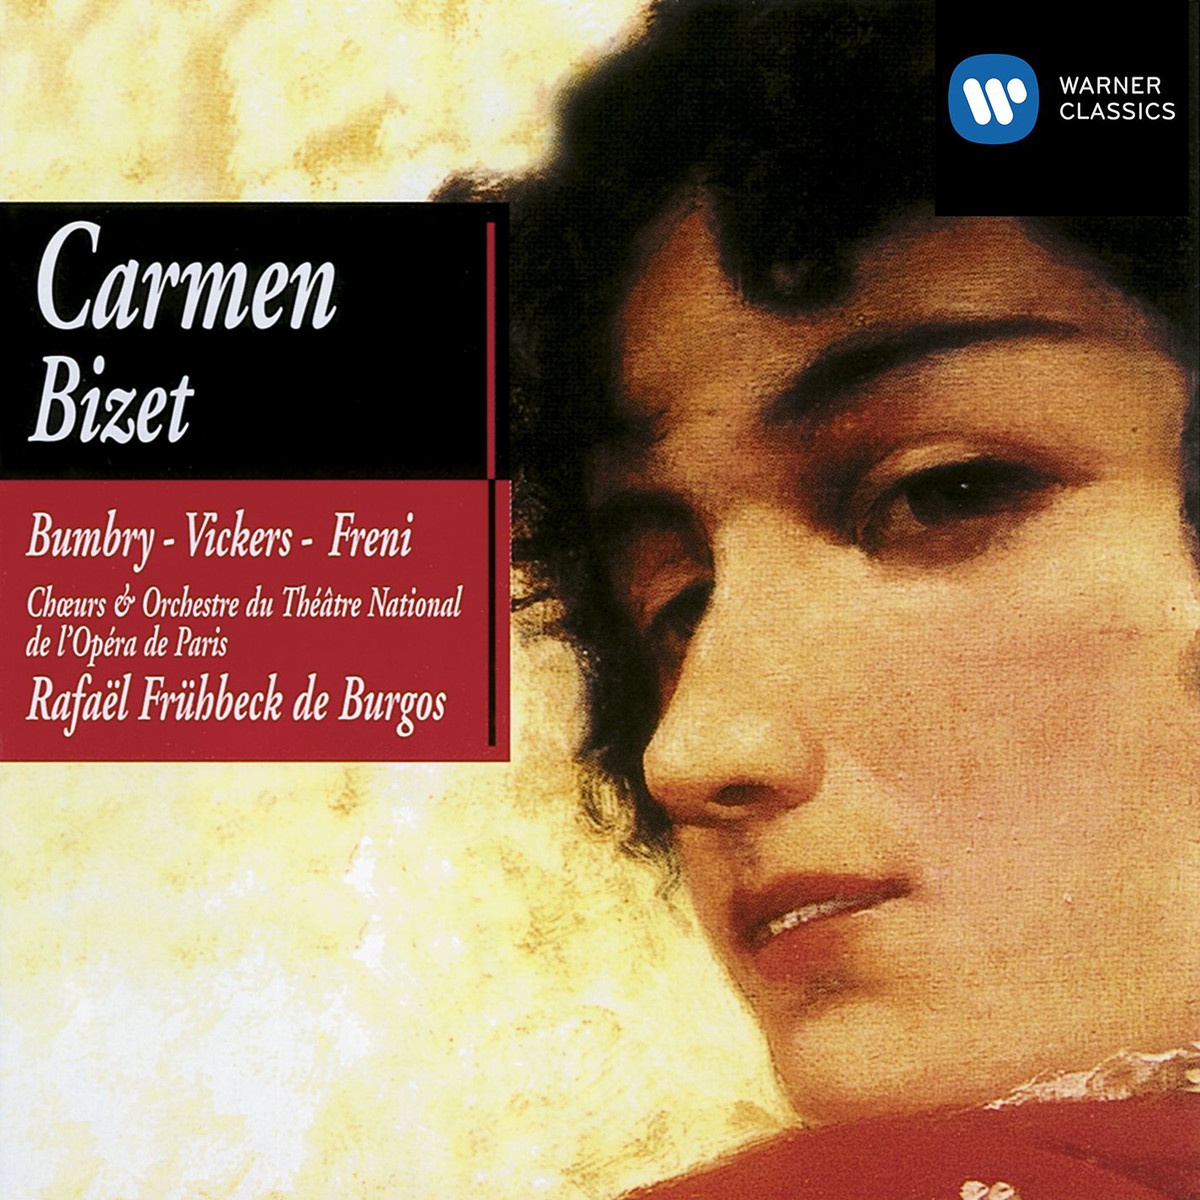 Carmen 1990 Digital Remaster, ACT 1: Et quel... La cloche a sonne